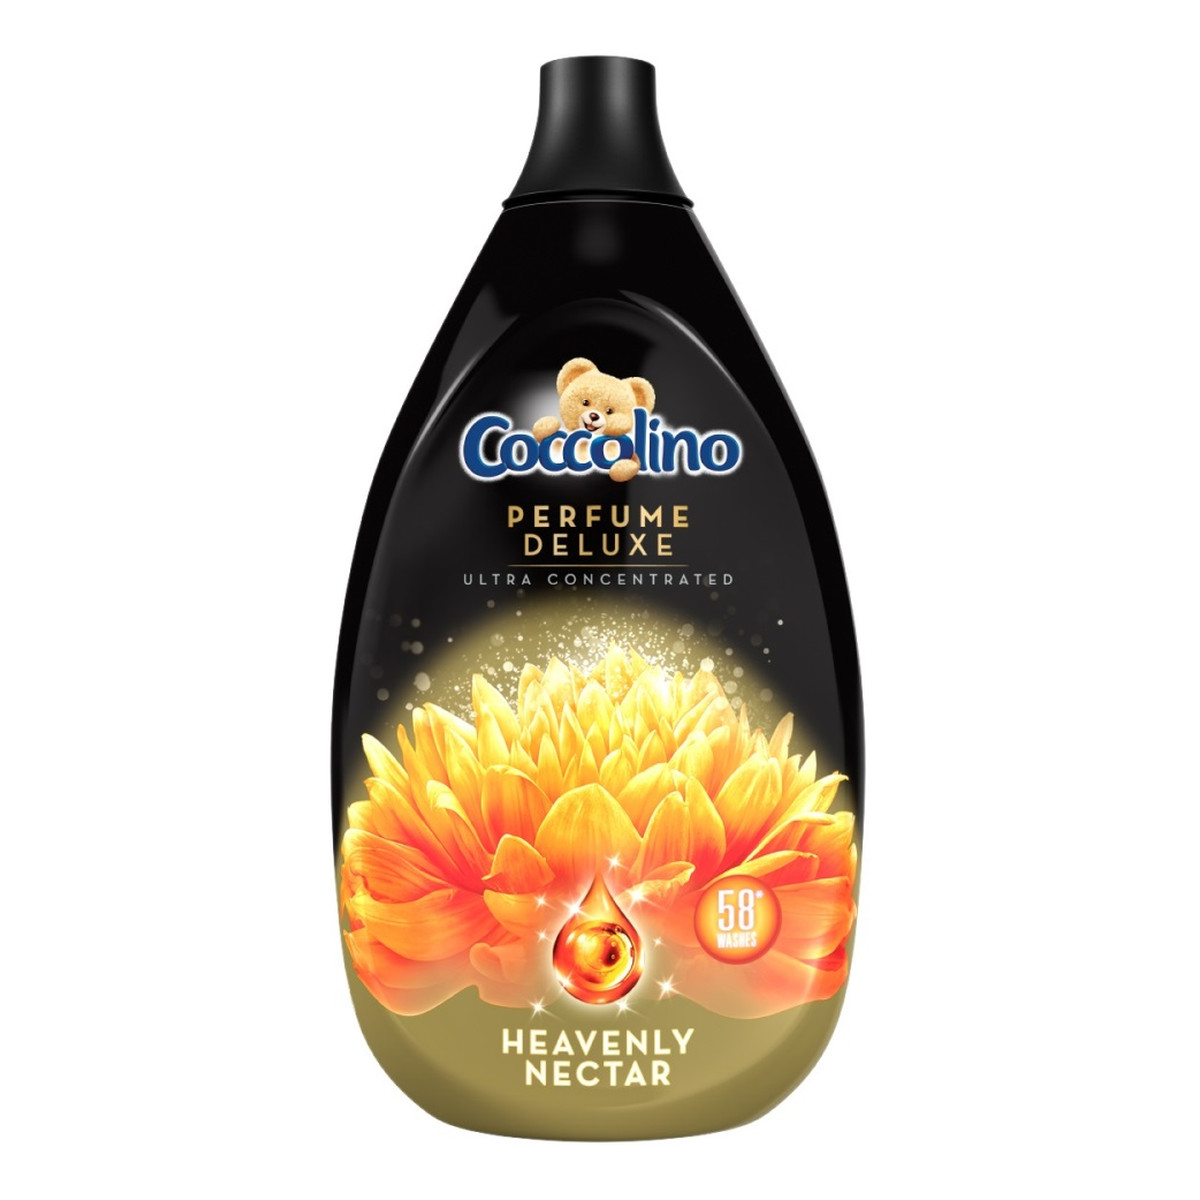 Coccolino Perfume deluxe koncentrat do płukania tkanin heavenly nectar 870ml